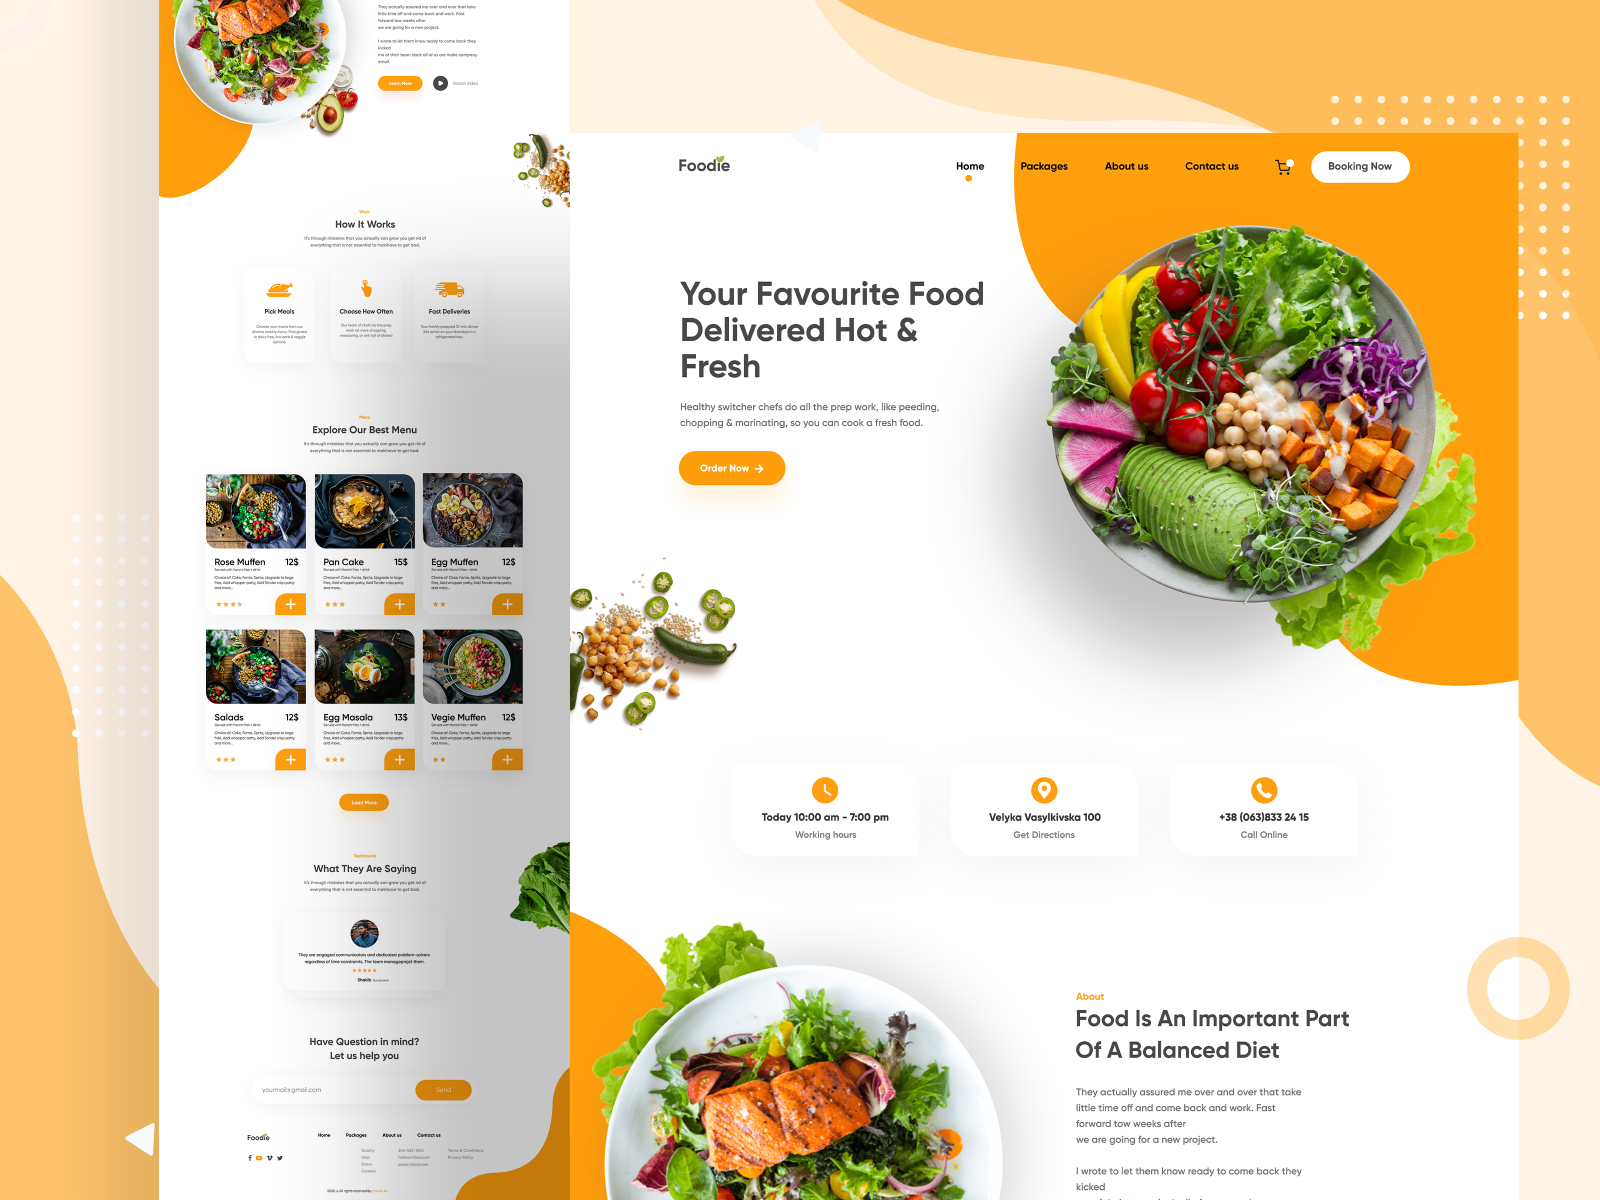 Mẫu thiết kế website thực phẩm - nhà hàng 15 đẹp - dribbble-com/shots/11246595-Foodie-Landing-Page/attachments/2854467?mode=media